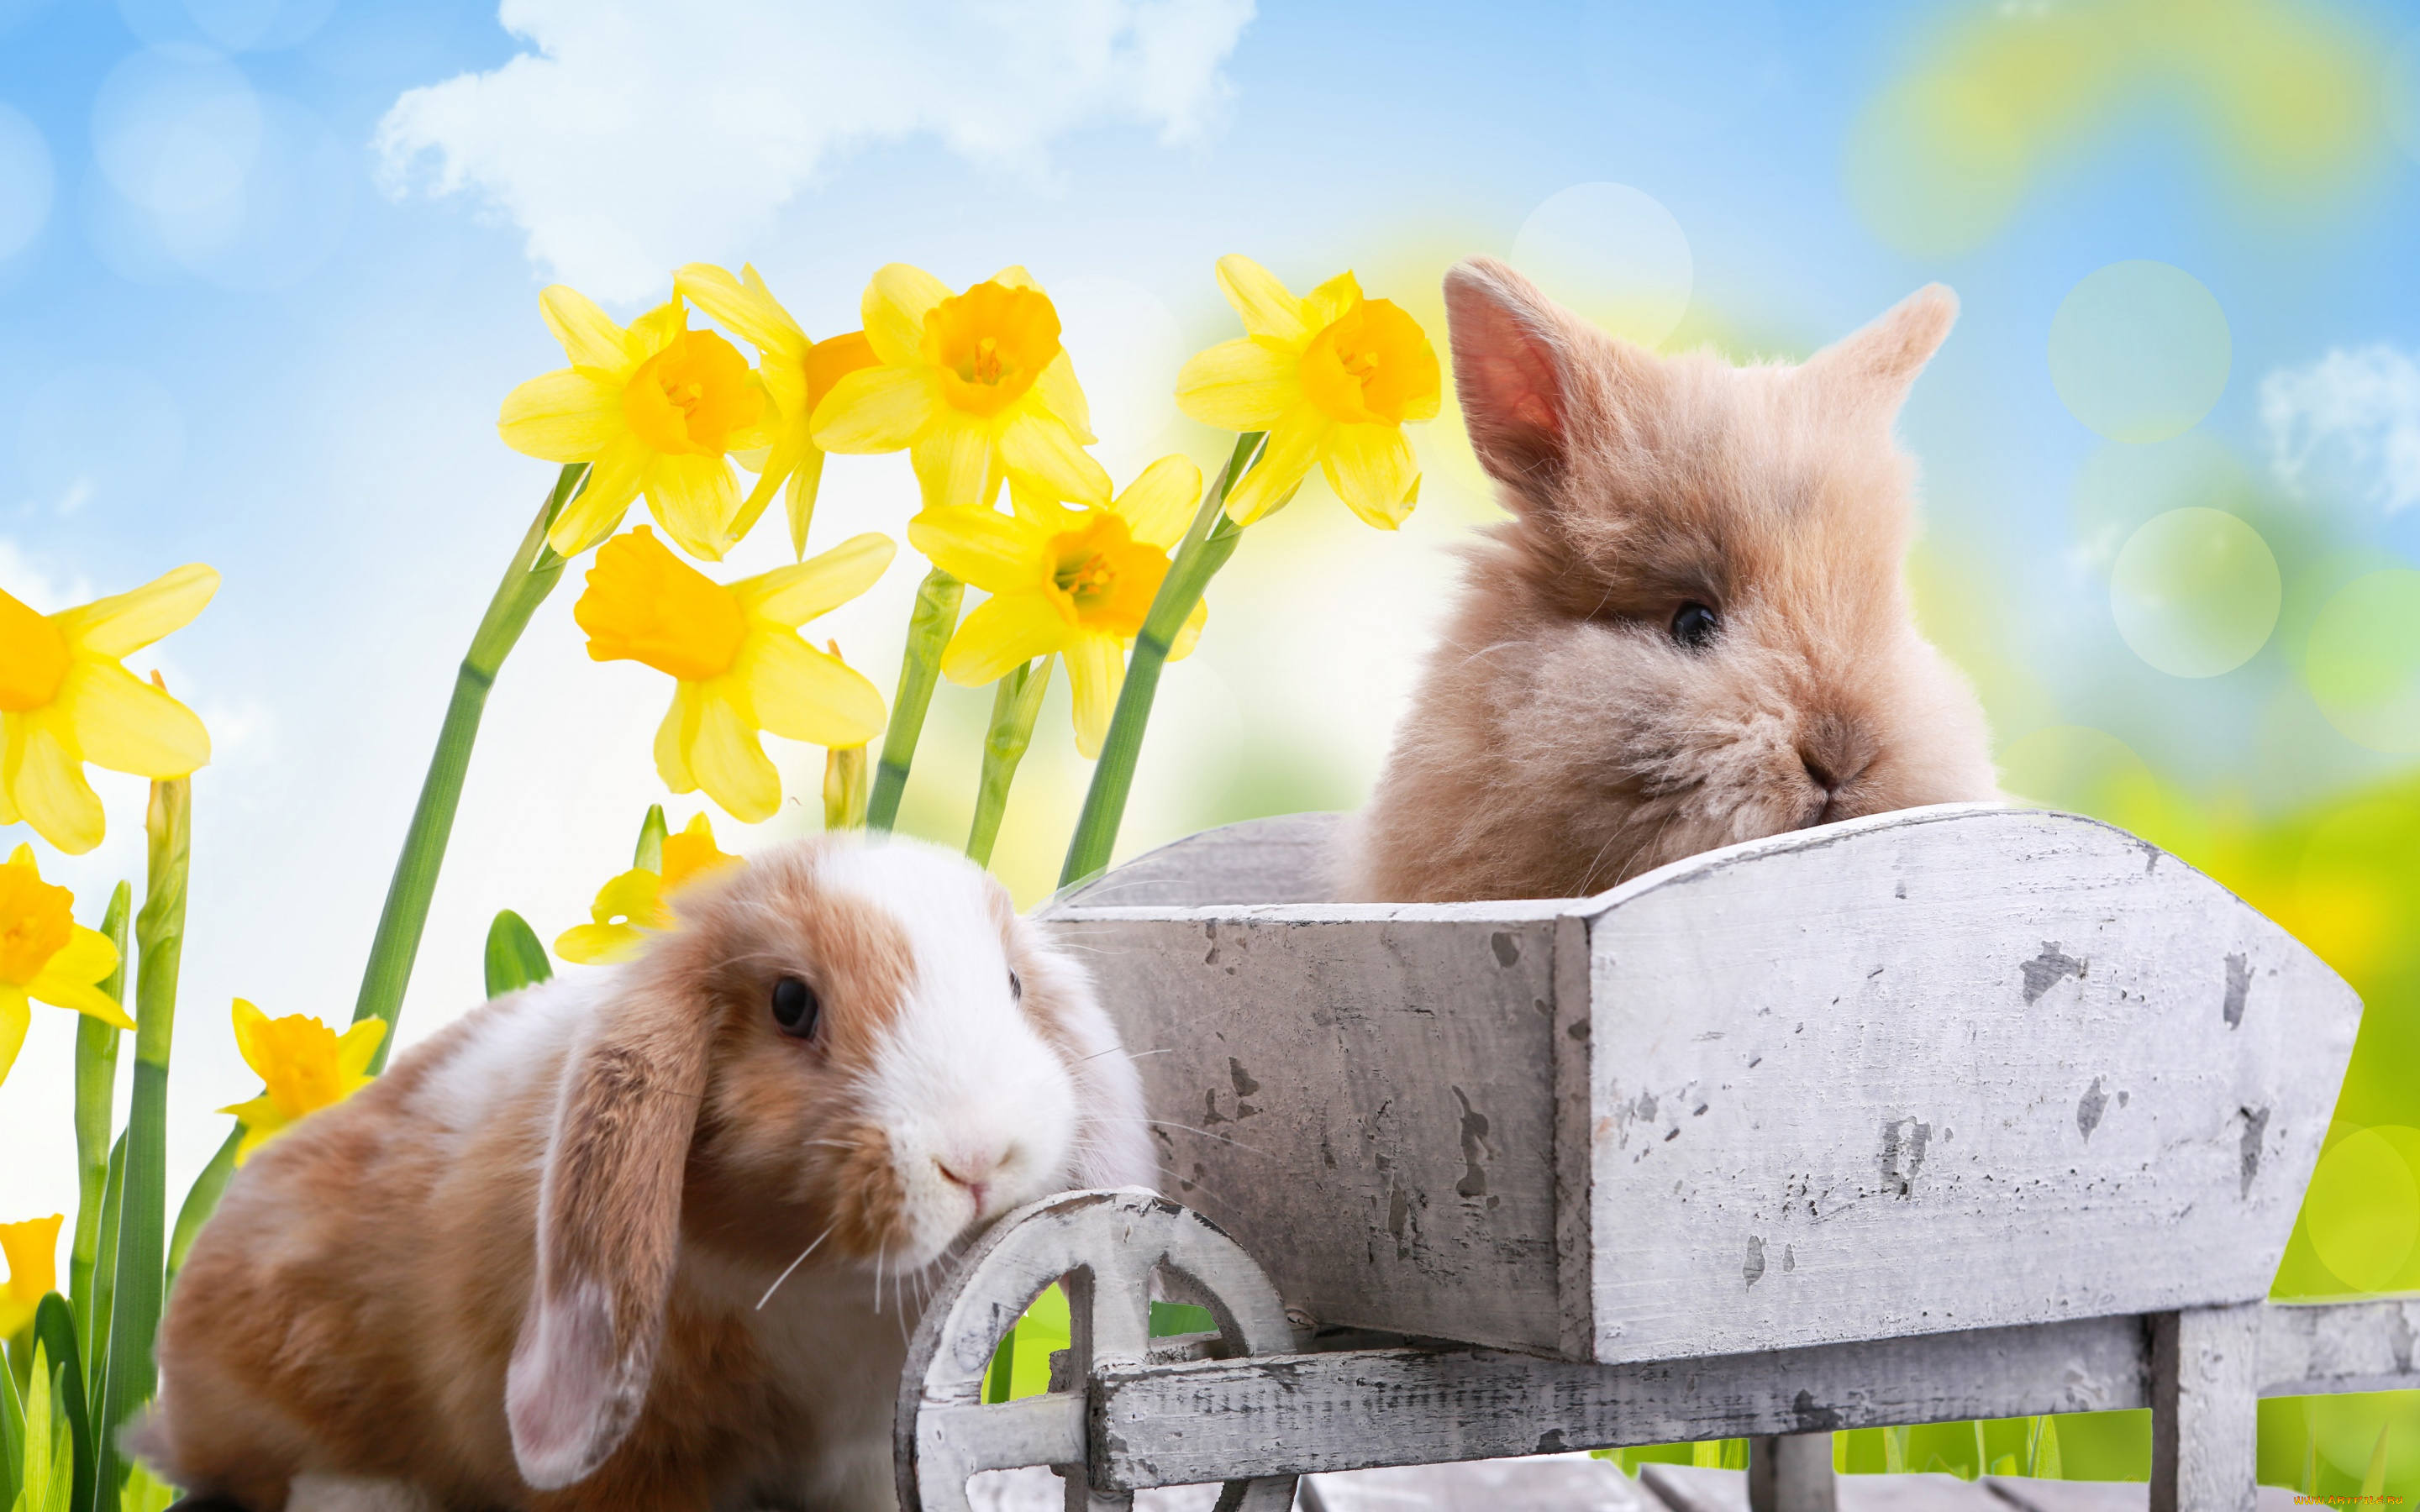 животные, кролики, , зайцы, цветы, праздник, природа, нарциссы, пасха, доски, тележка, easter, облака, небо, весна